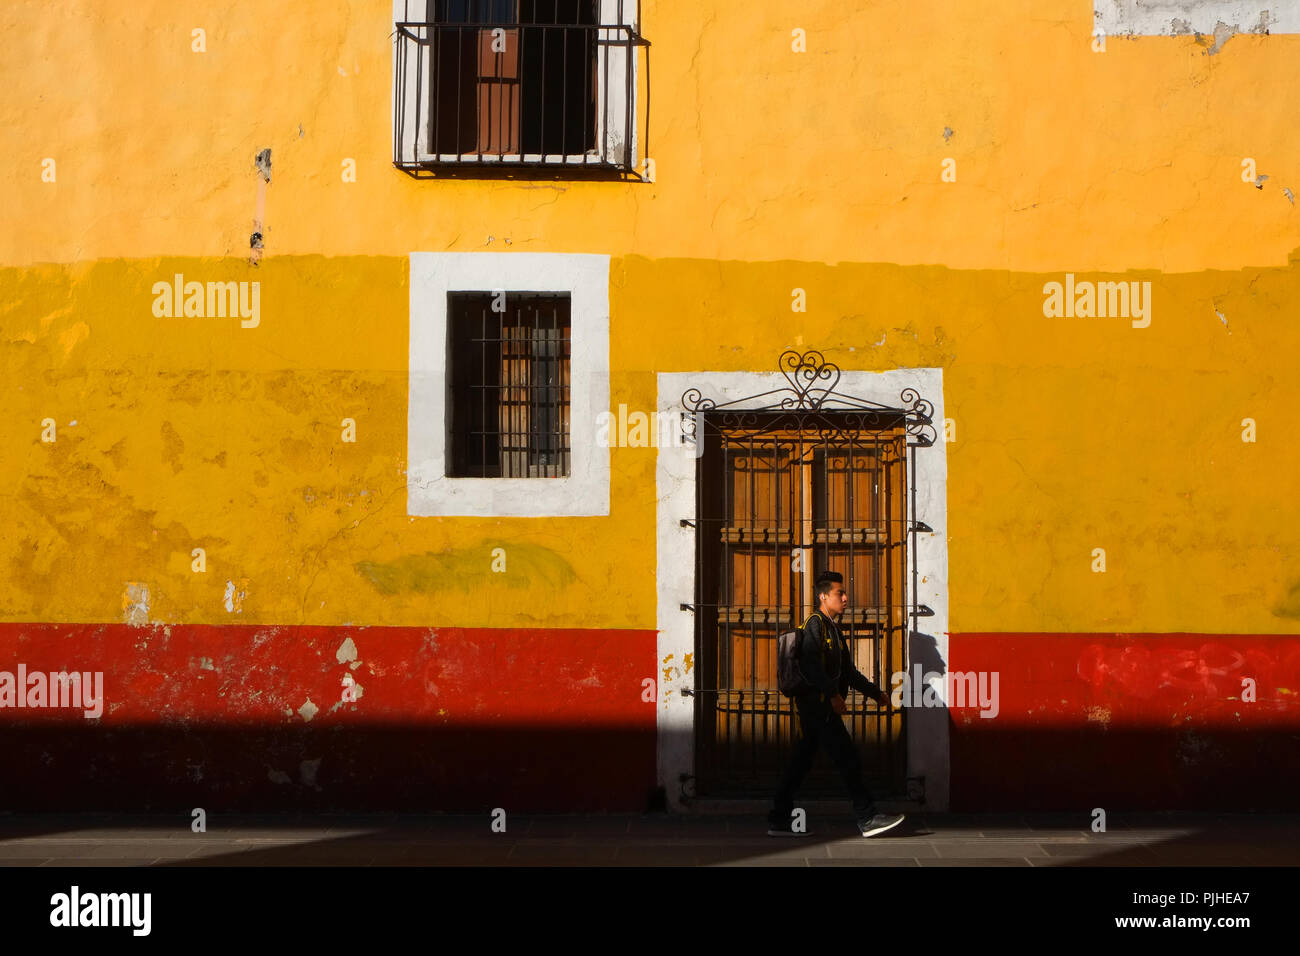 Muro rojo brillante y amarillo en la luz de la mañana, Puebla, México Foto de stock